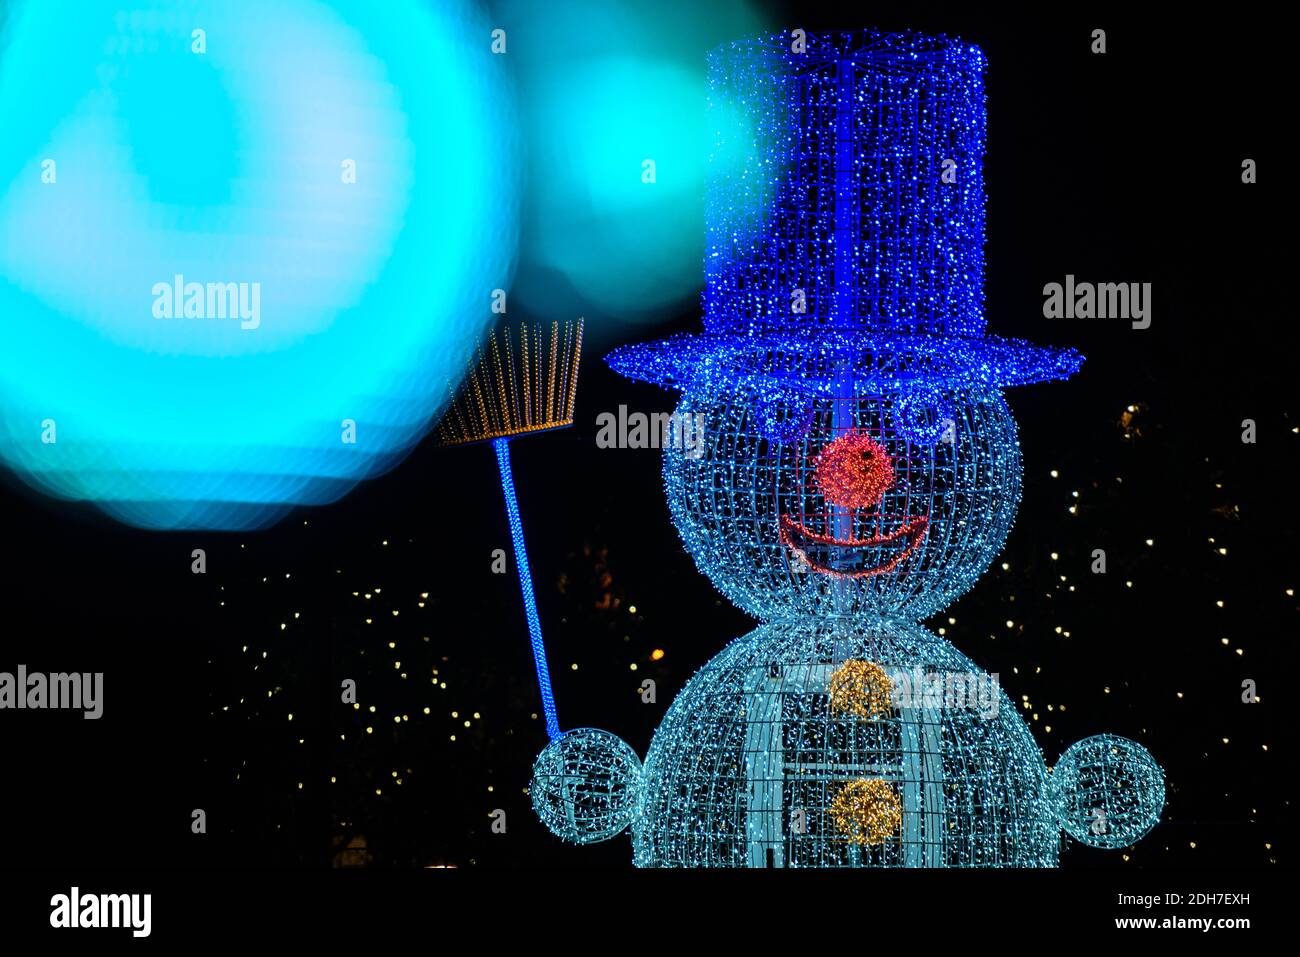 Berlin, Berlin, Deutschland. Dezember 2020. Auf der KurfÃ¼rstendamm neben dem Konrad-Adenauer-Platz ist eine beleuchtete Schneemann-Figur zu sehen. Quelle: Jan Scheunert/ZUMA Wire/Alamy Live News Stockfoto